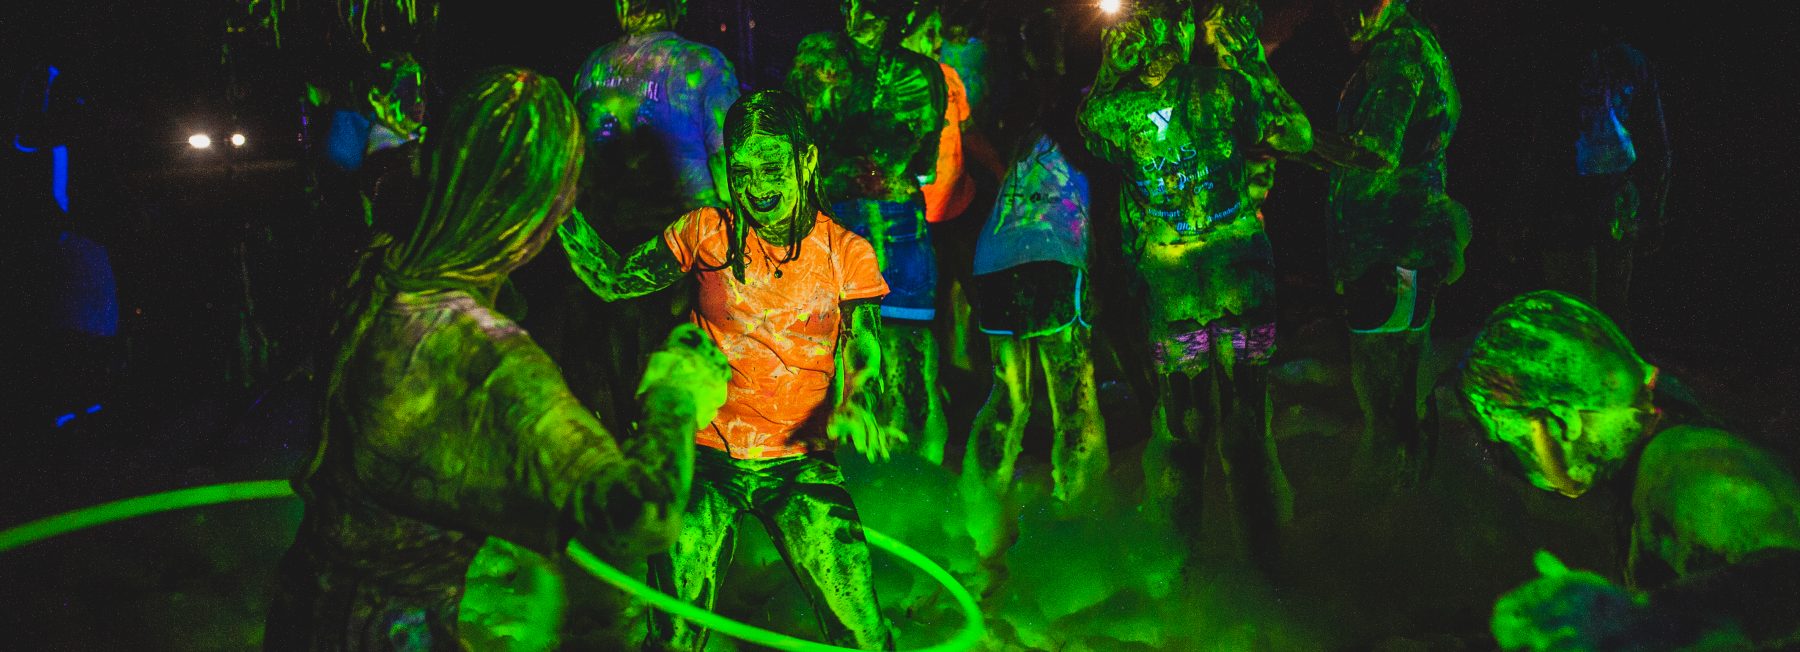 Foam, Slime & Glow Party